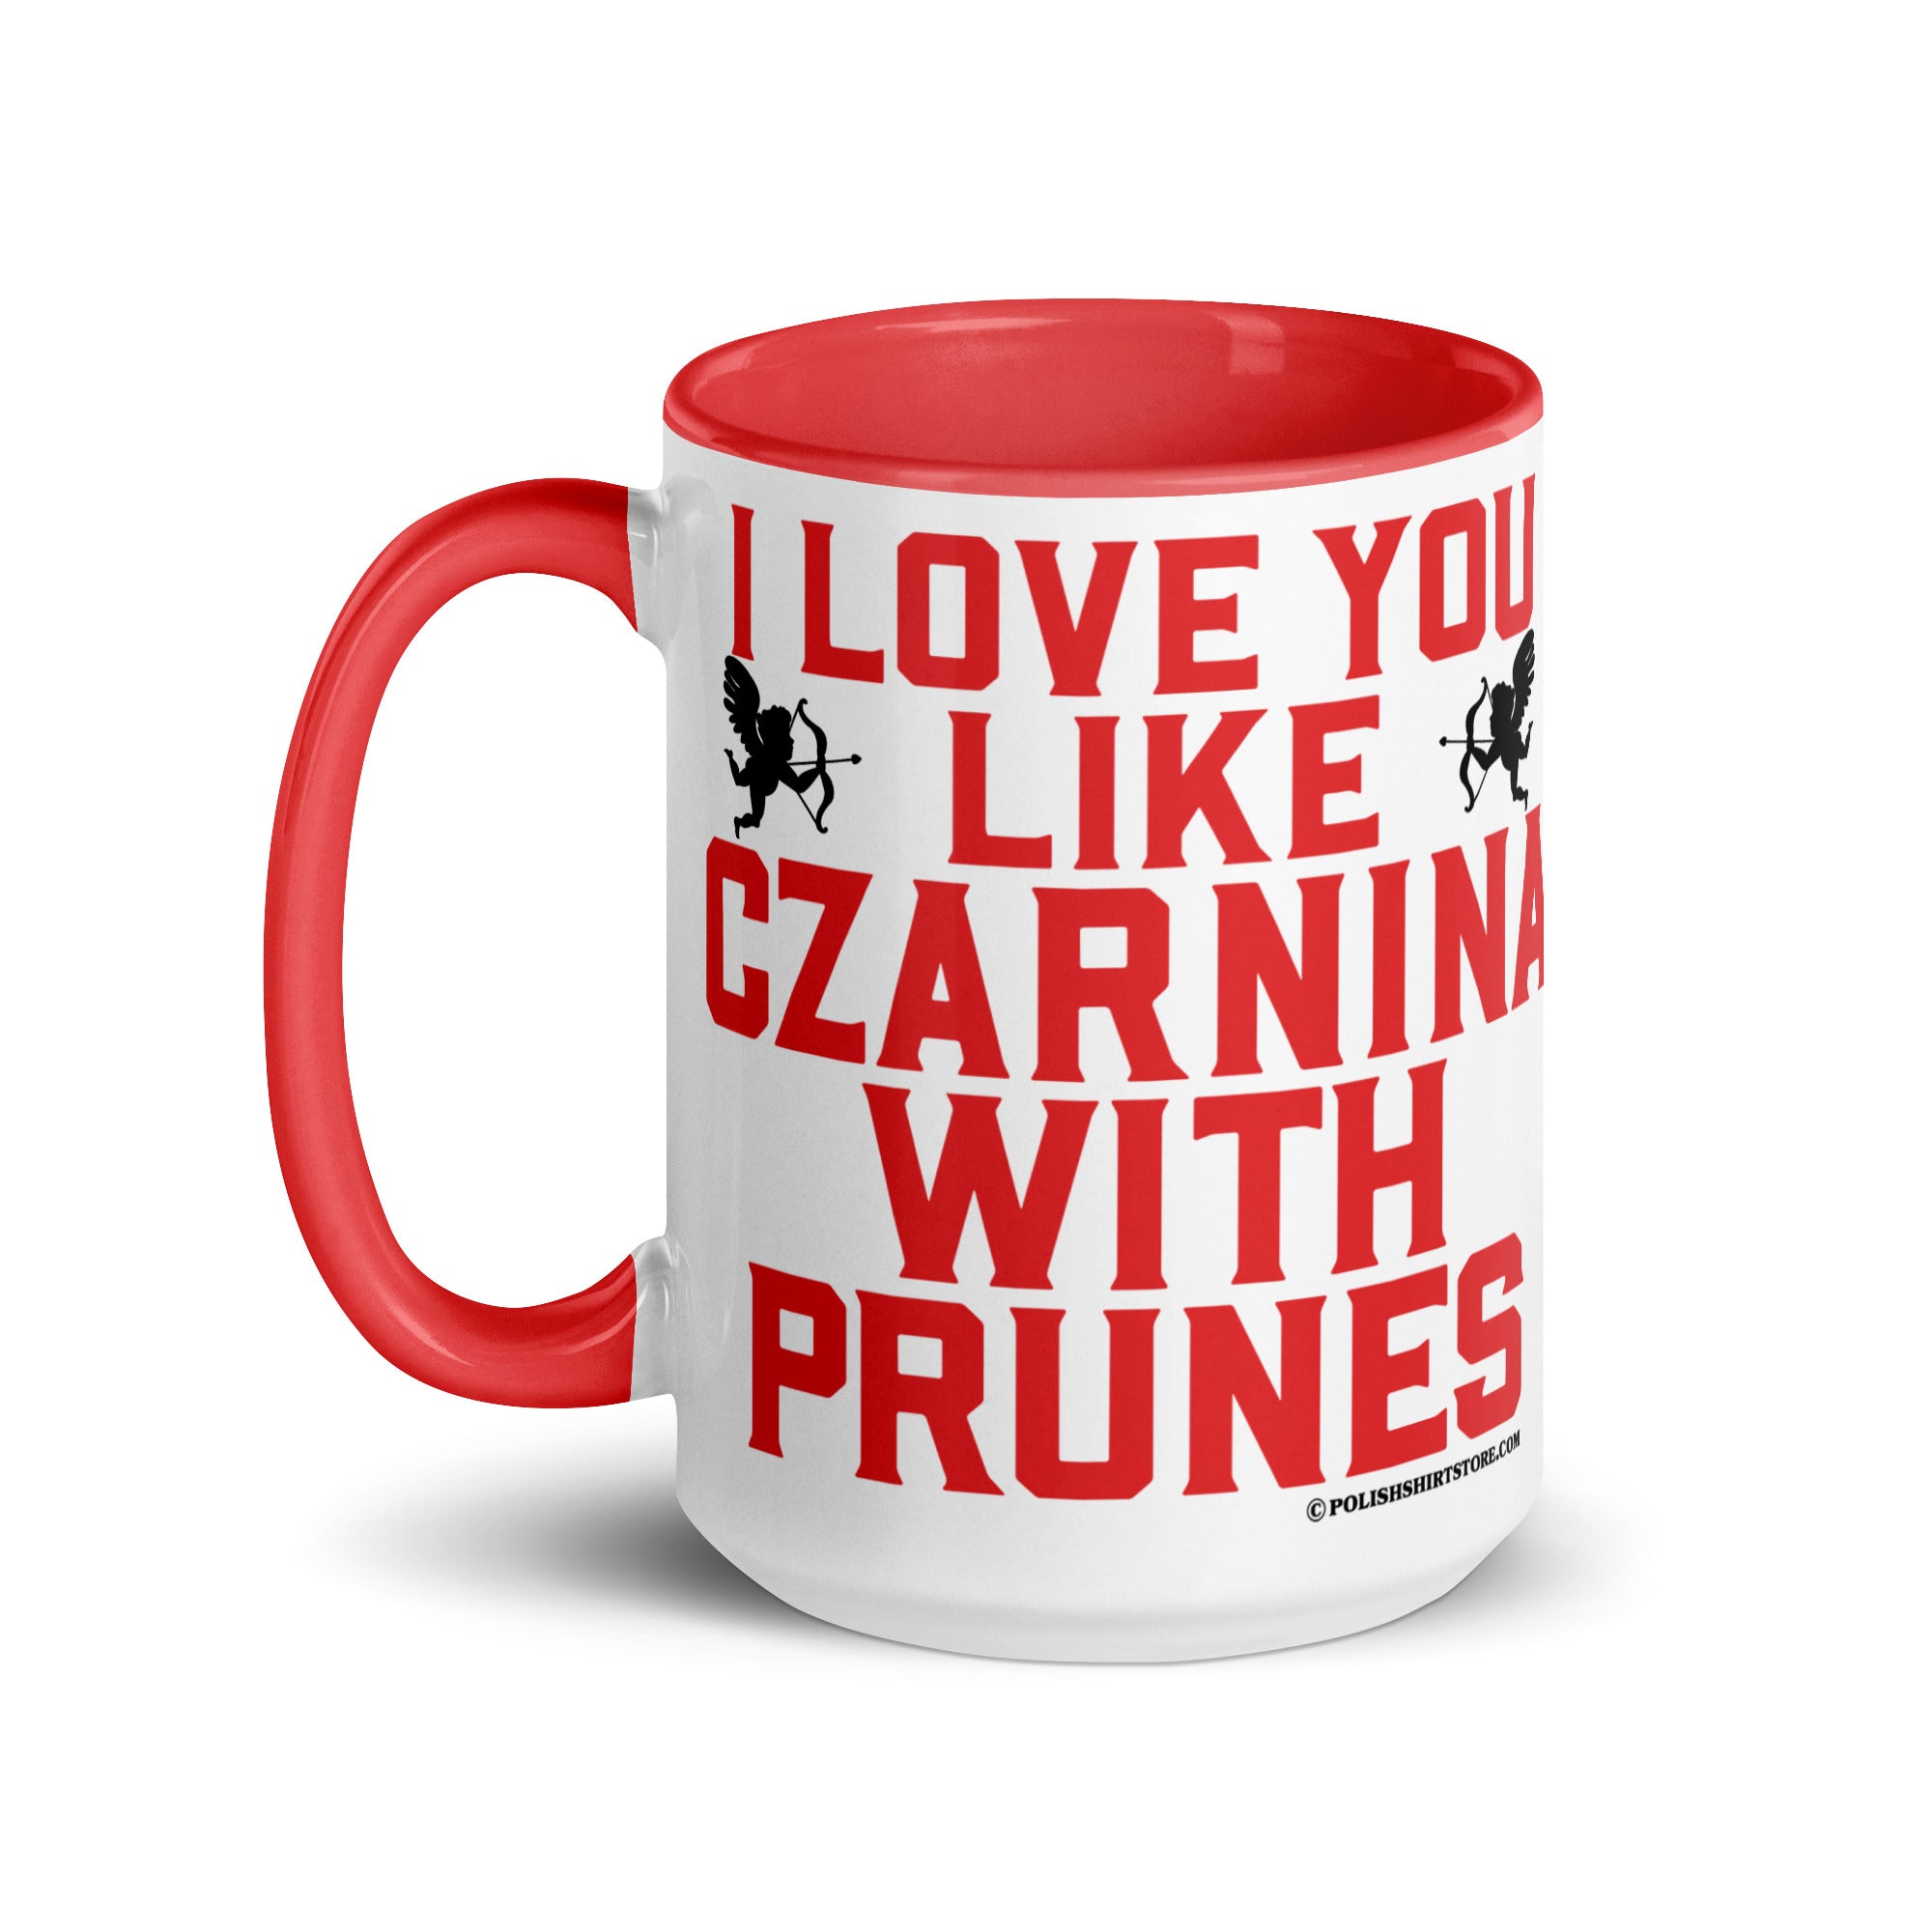 I Love You Like Czarnina With Prunes Coffee Mug with Color Inside  Polish Shirt Store   